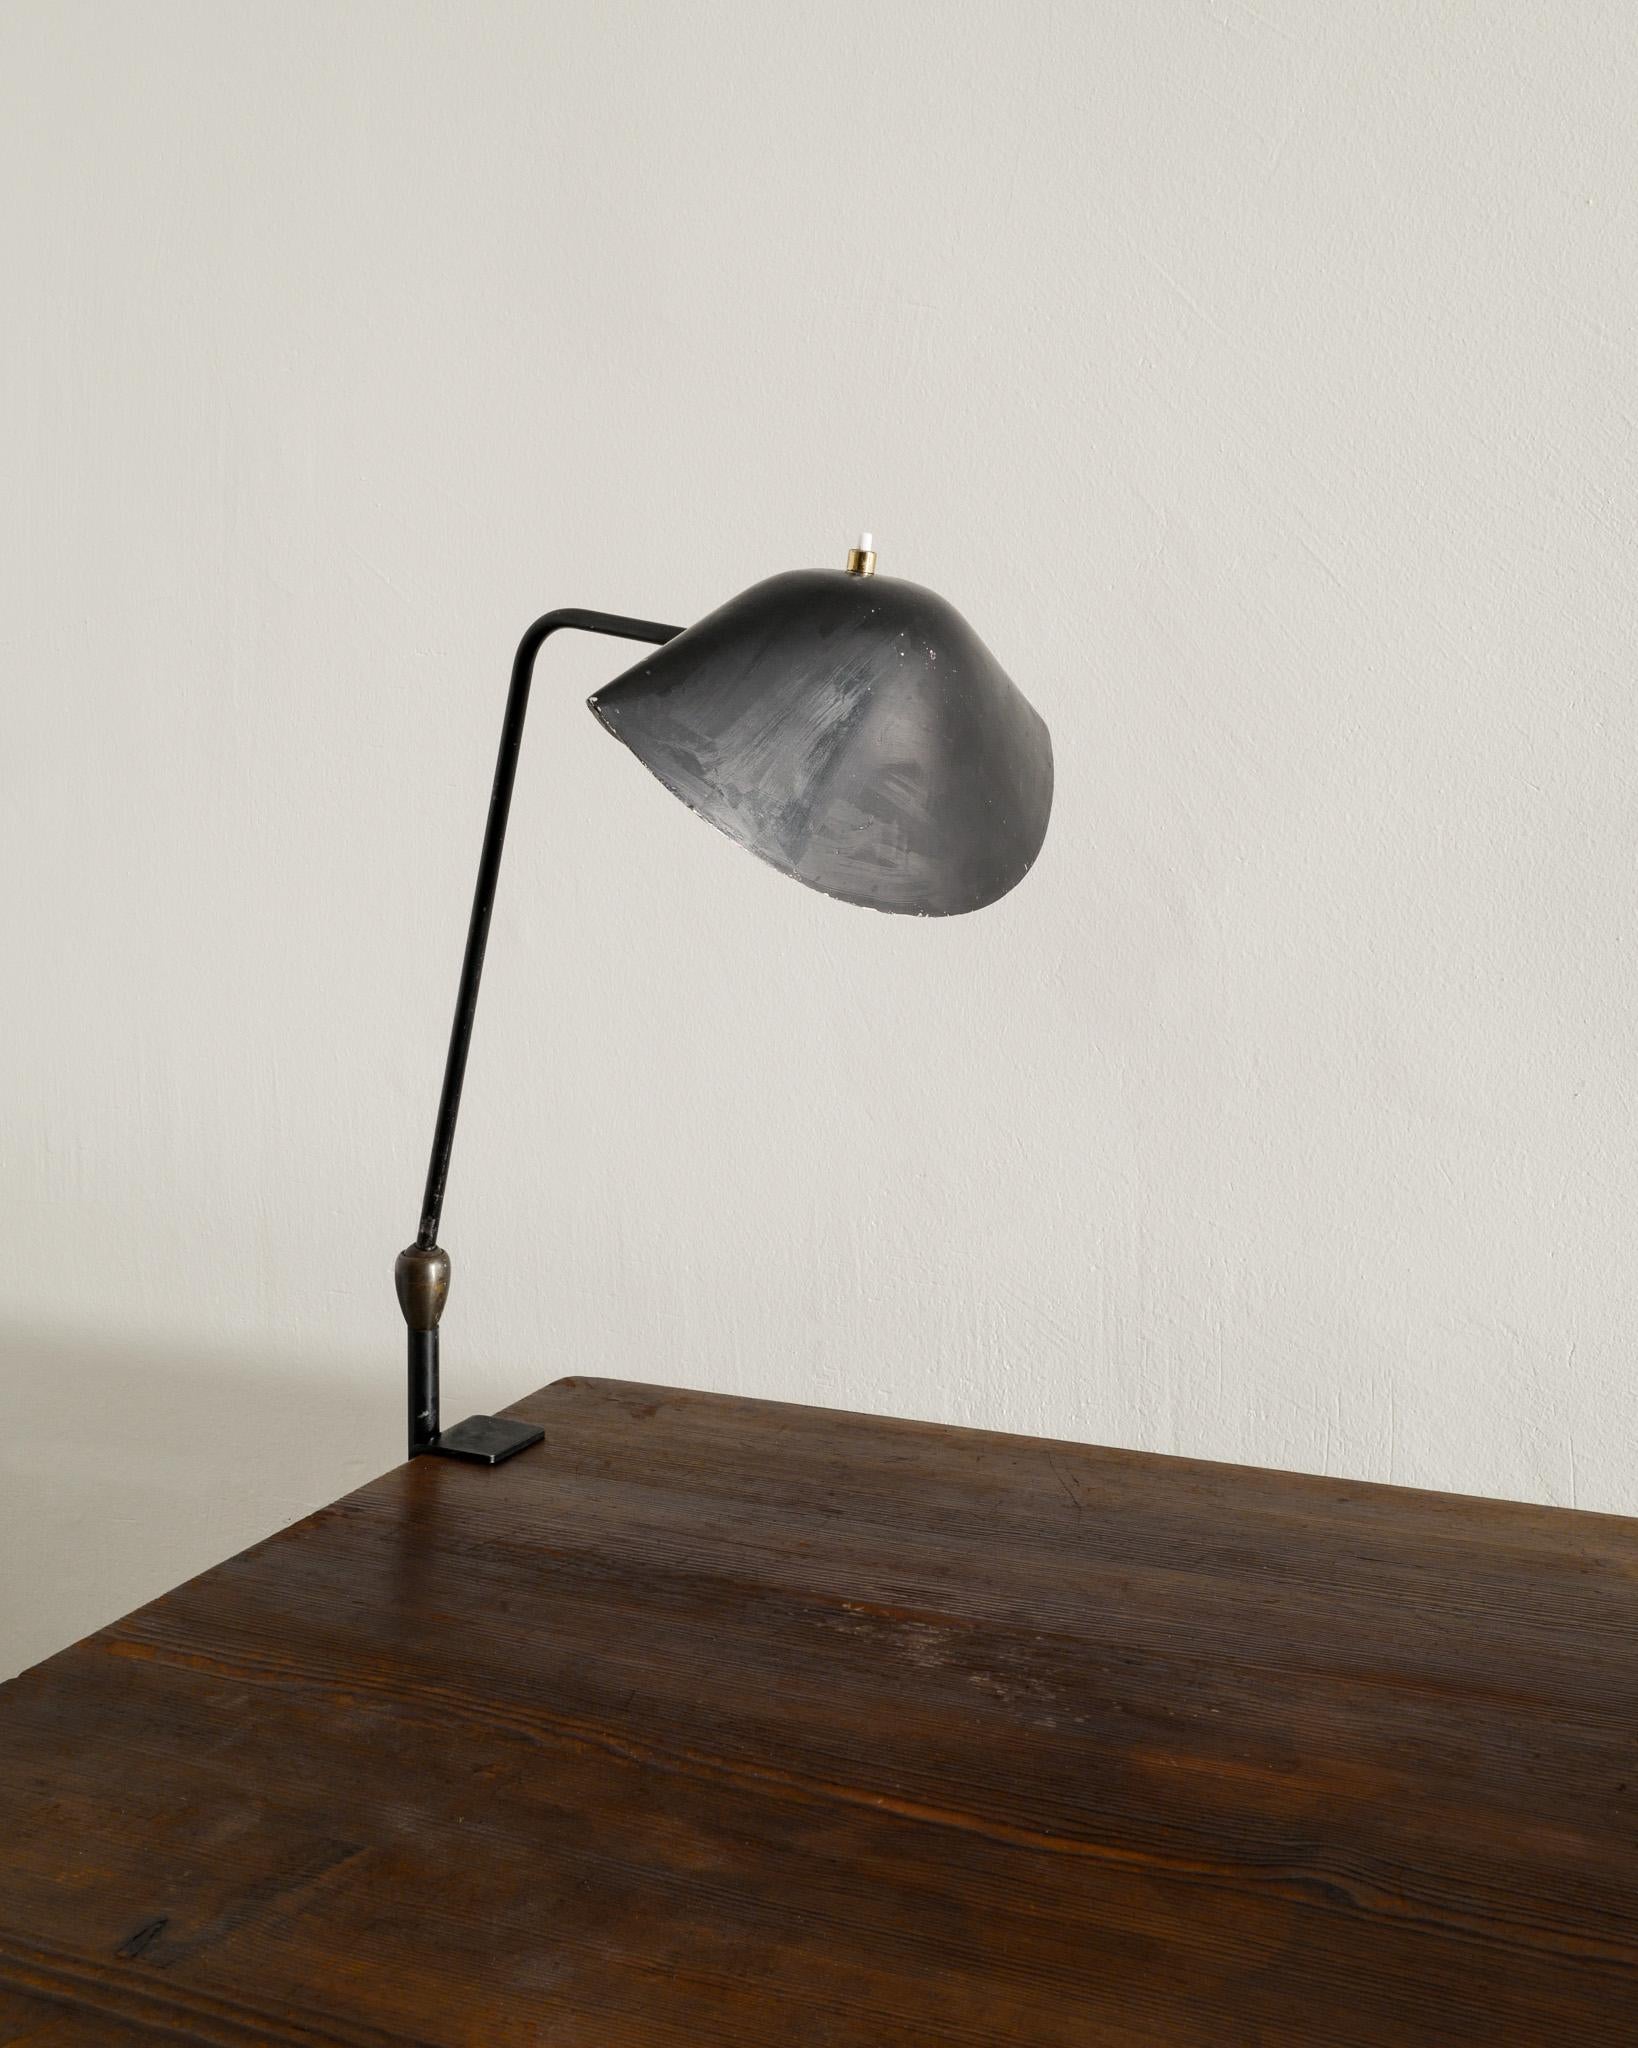 Très rare et attrayante lampe de table / bureau 